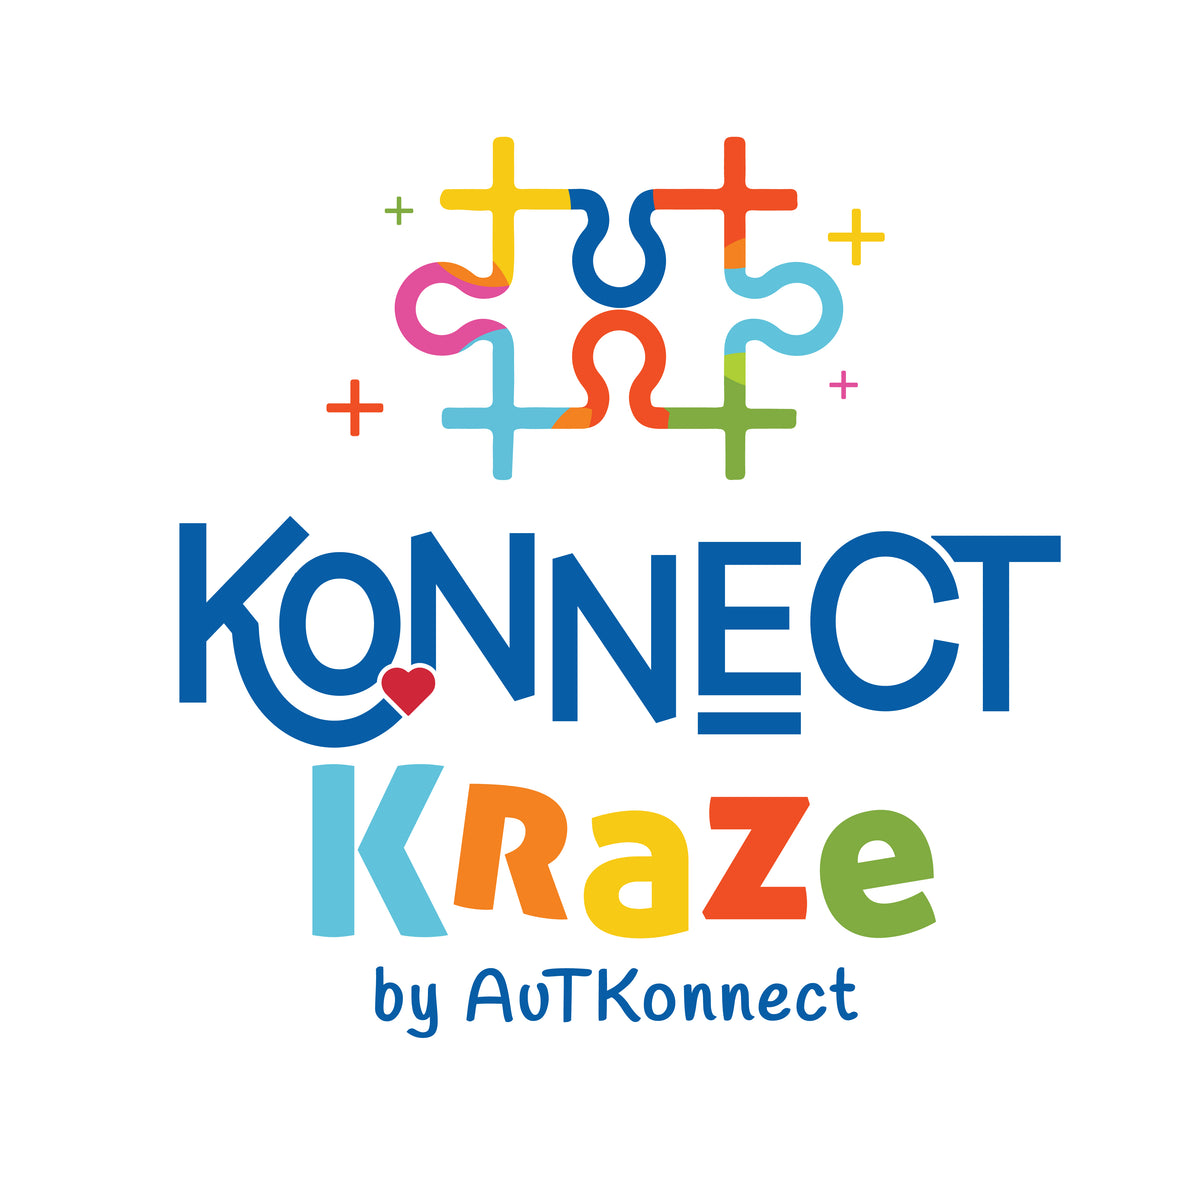 Konnect Kraze – Konnect Kraze by AuTKonnect